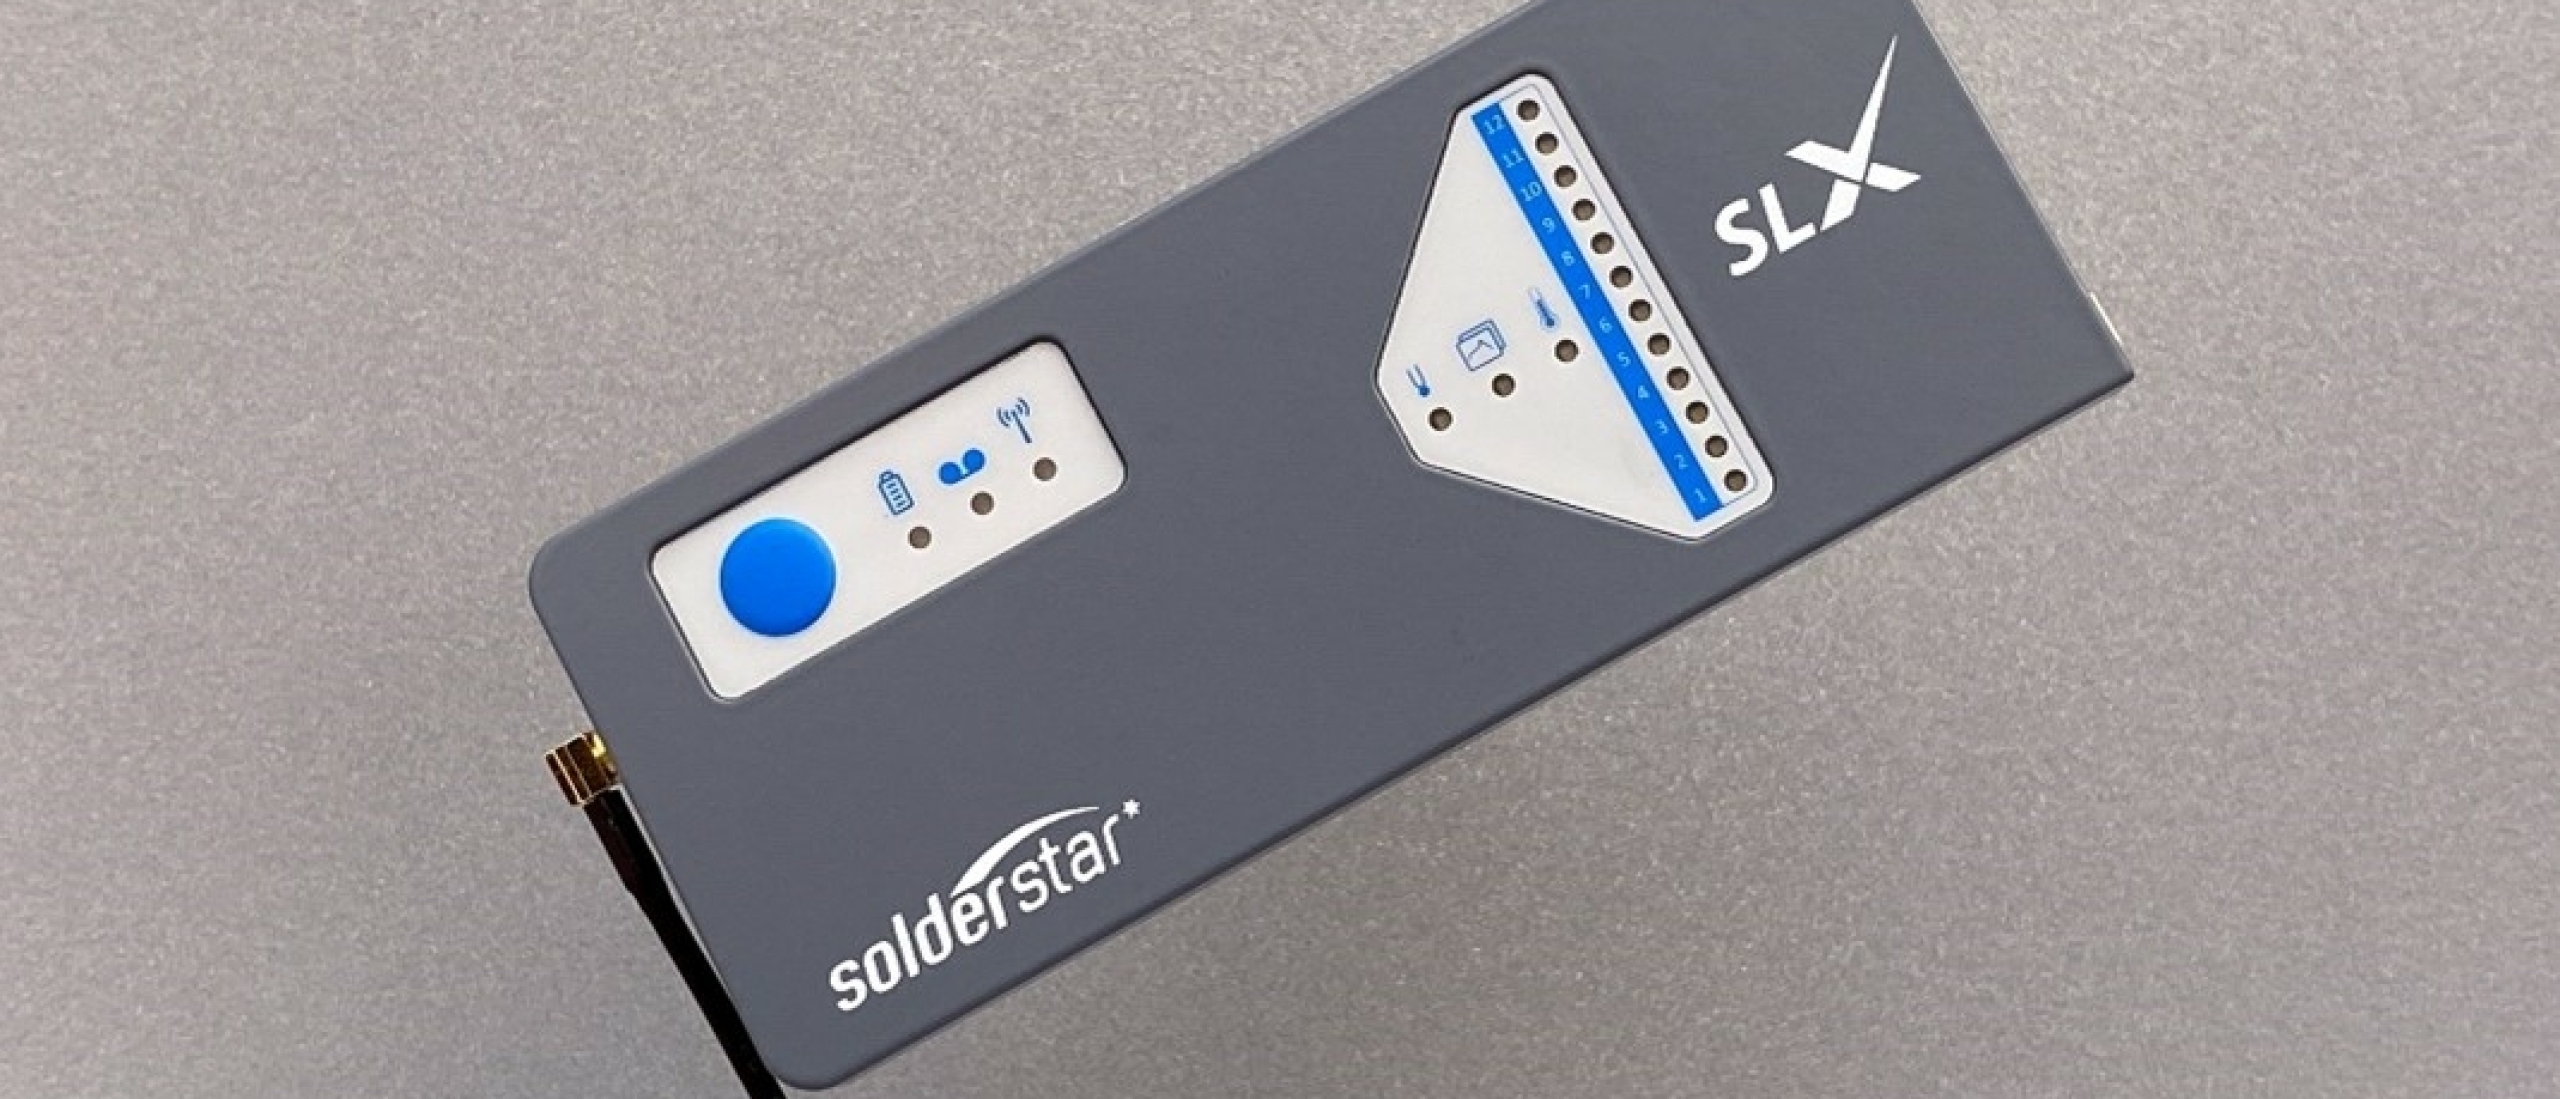 Solderstar SLX, the new benchmark in Thermal profiling.